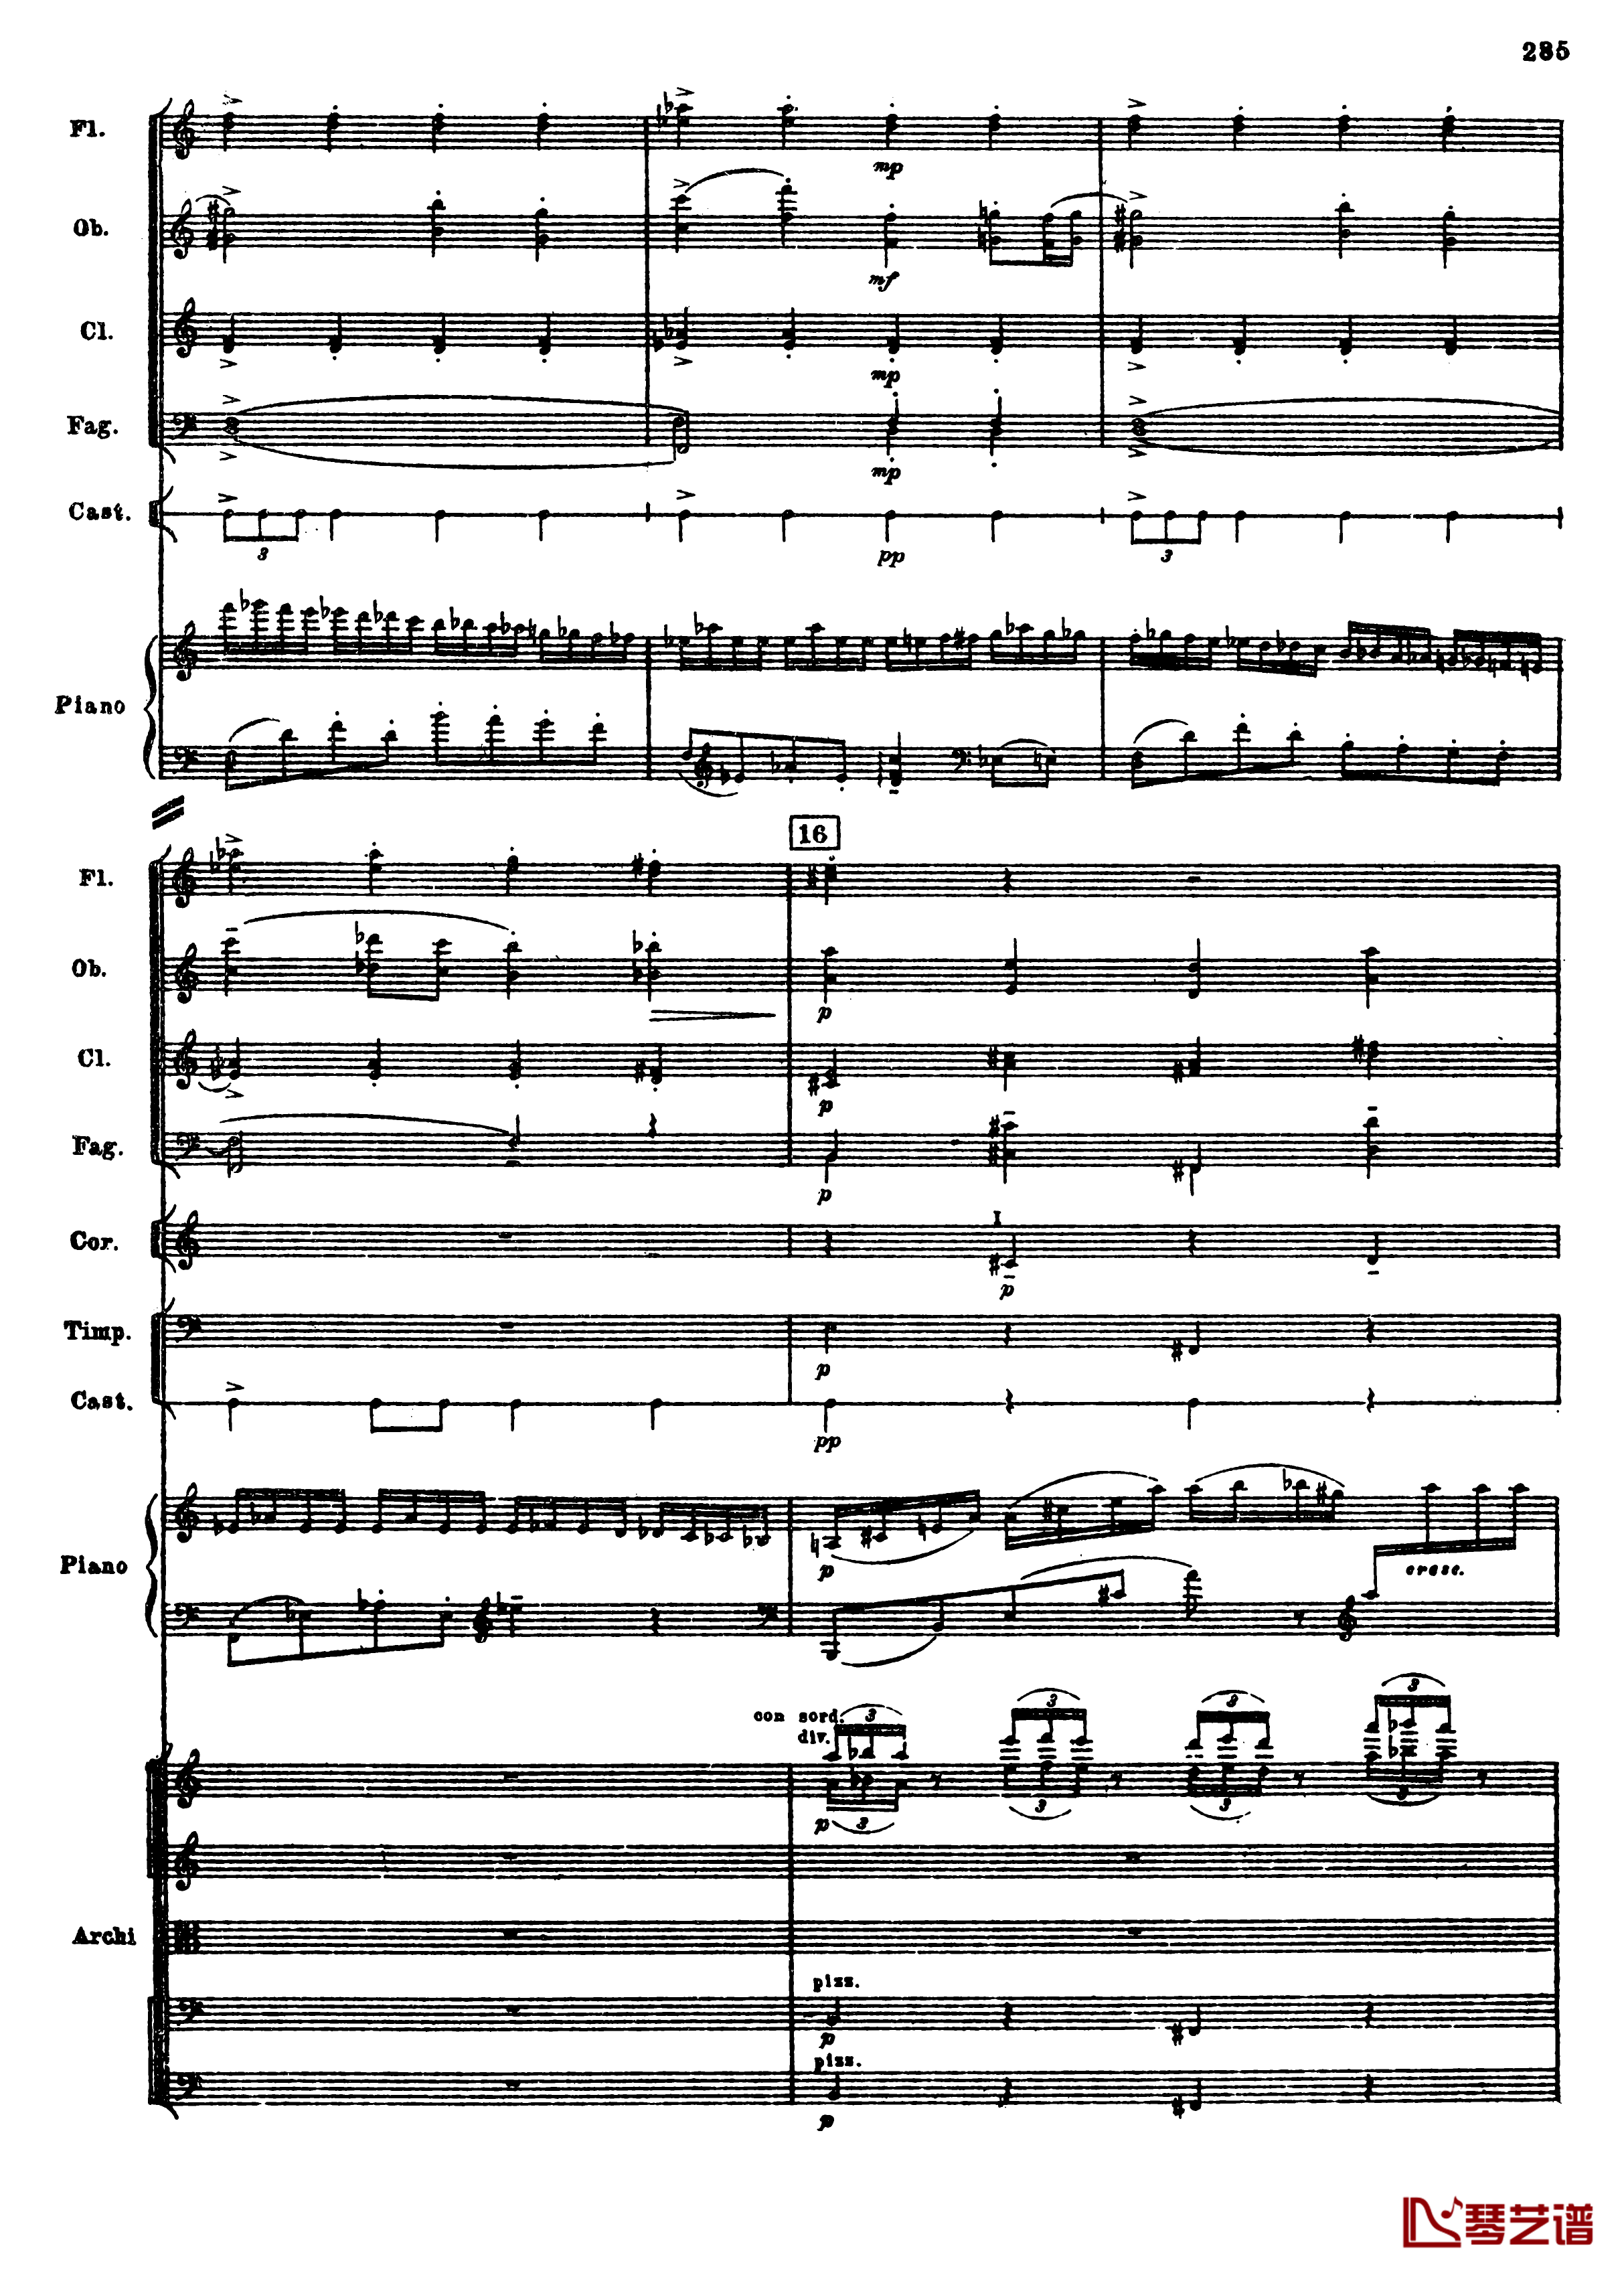 普罗科菲耶夫第三钢琴协奏曲钢琴谱-总谱-普罗科非耶夫17